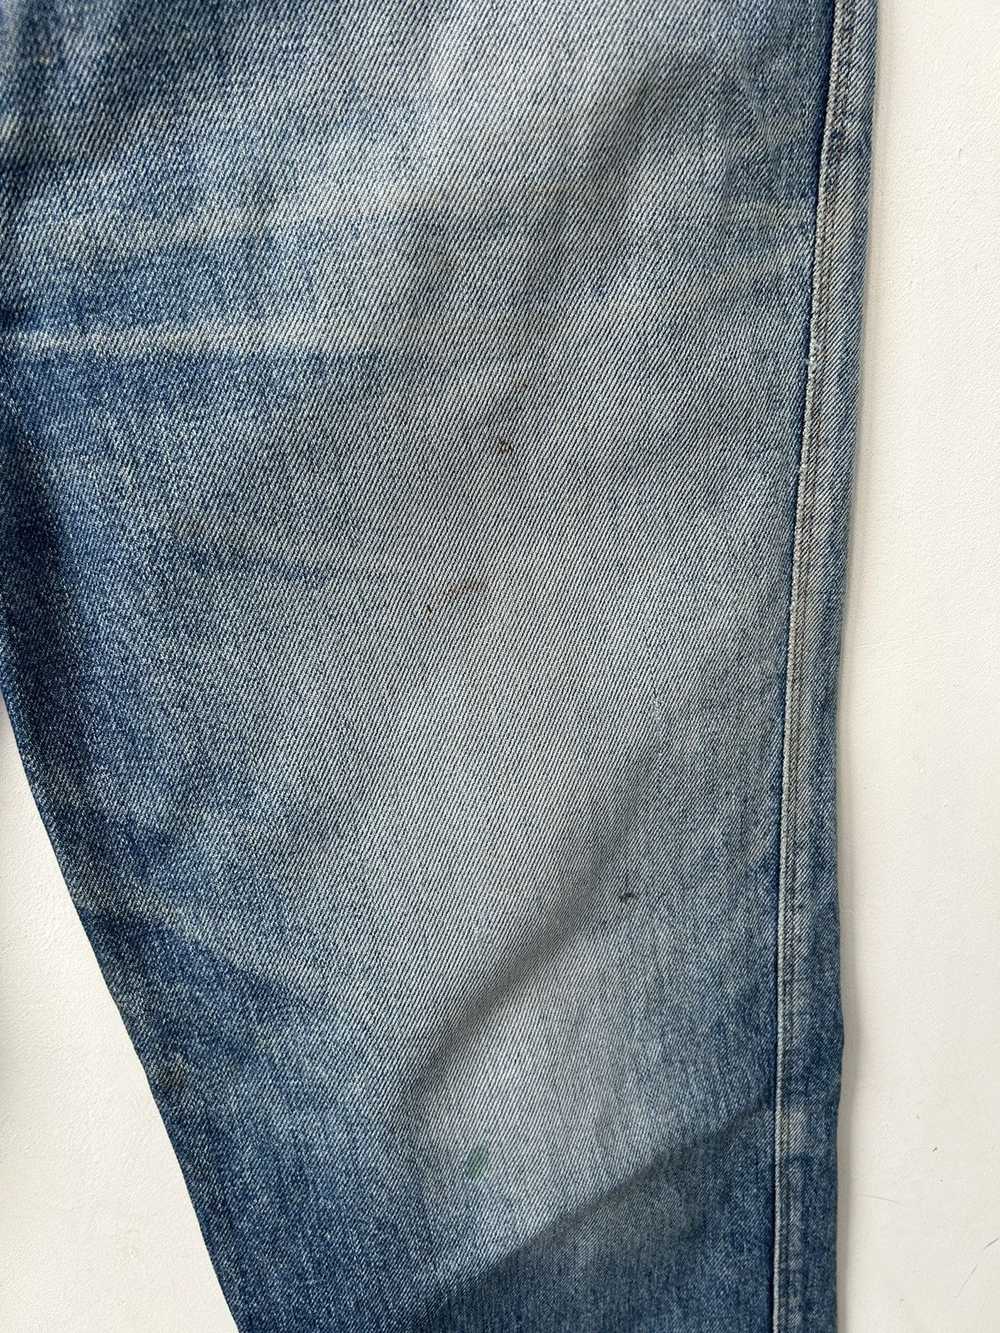 Givenchy × Streetwear × Vintage Vintage jeans - image 5